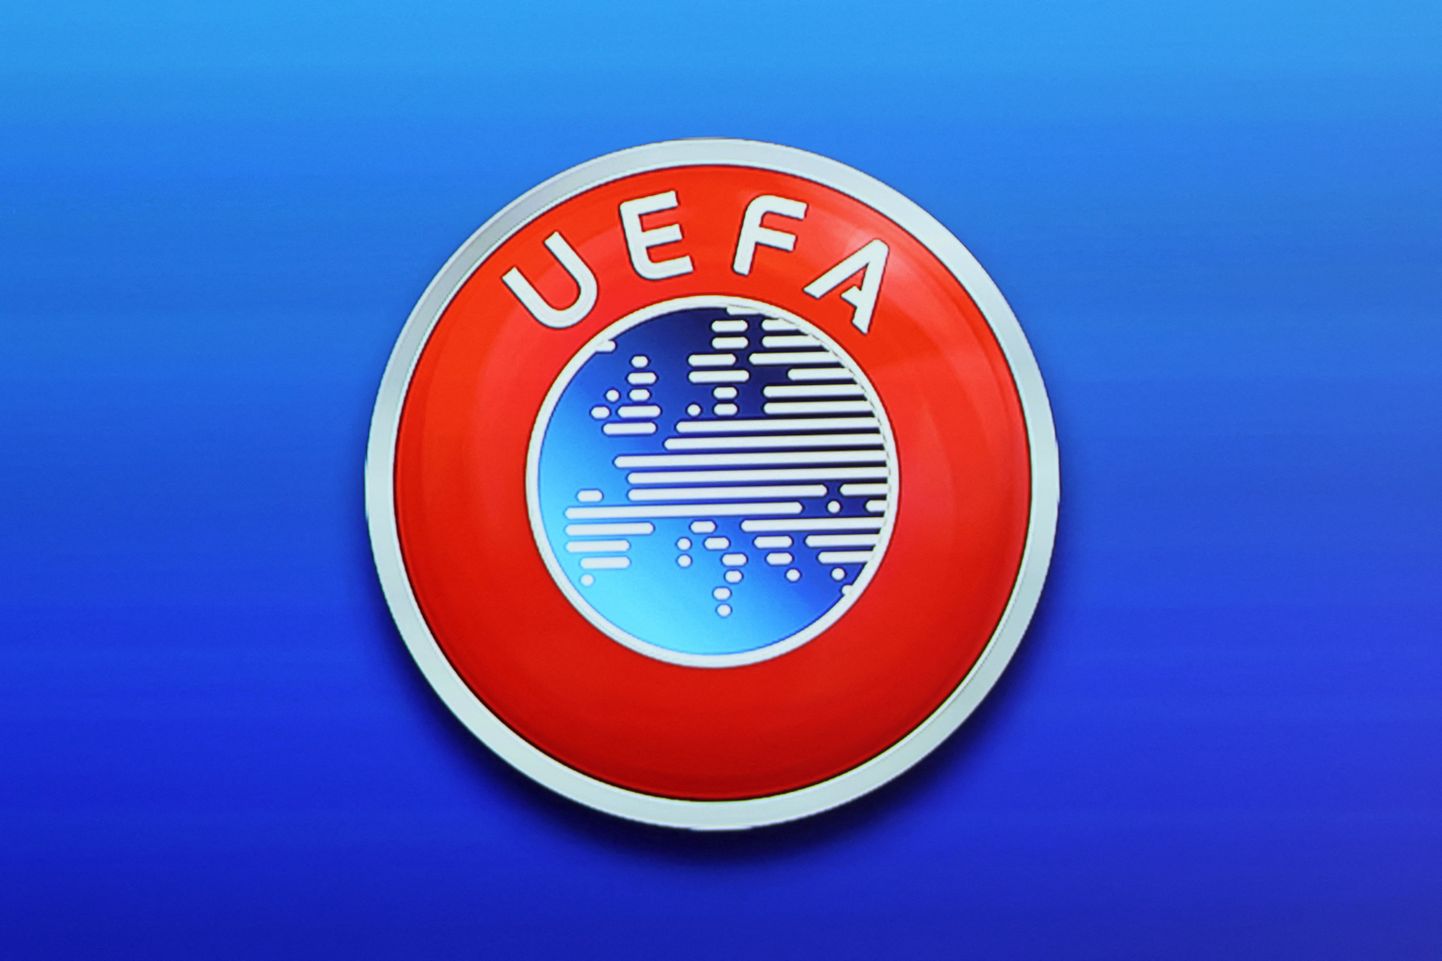 Euroopa jalgpalliliidu UEFA logo.